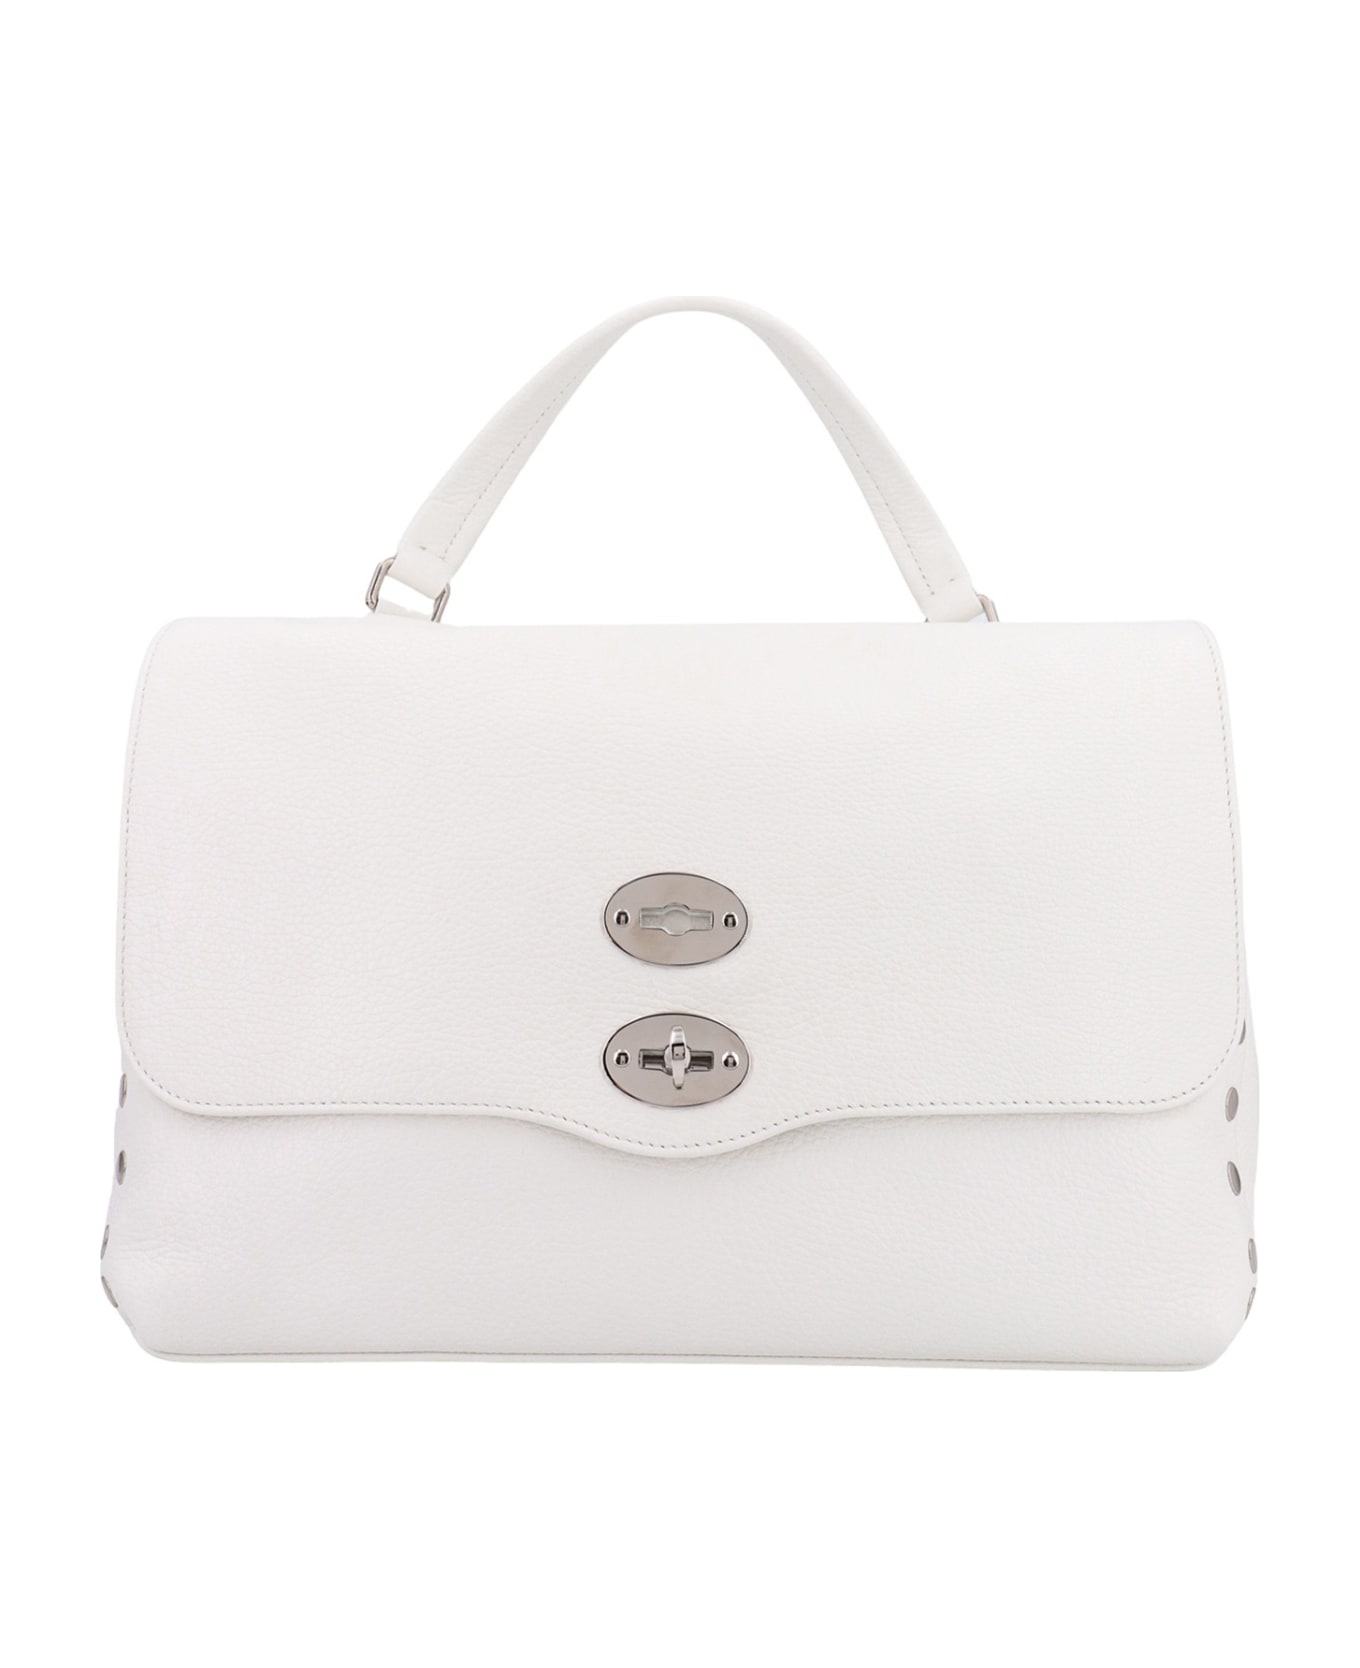 Zanellato Postina Daily M Handbag - White トートバッグ